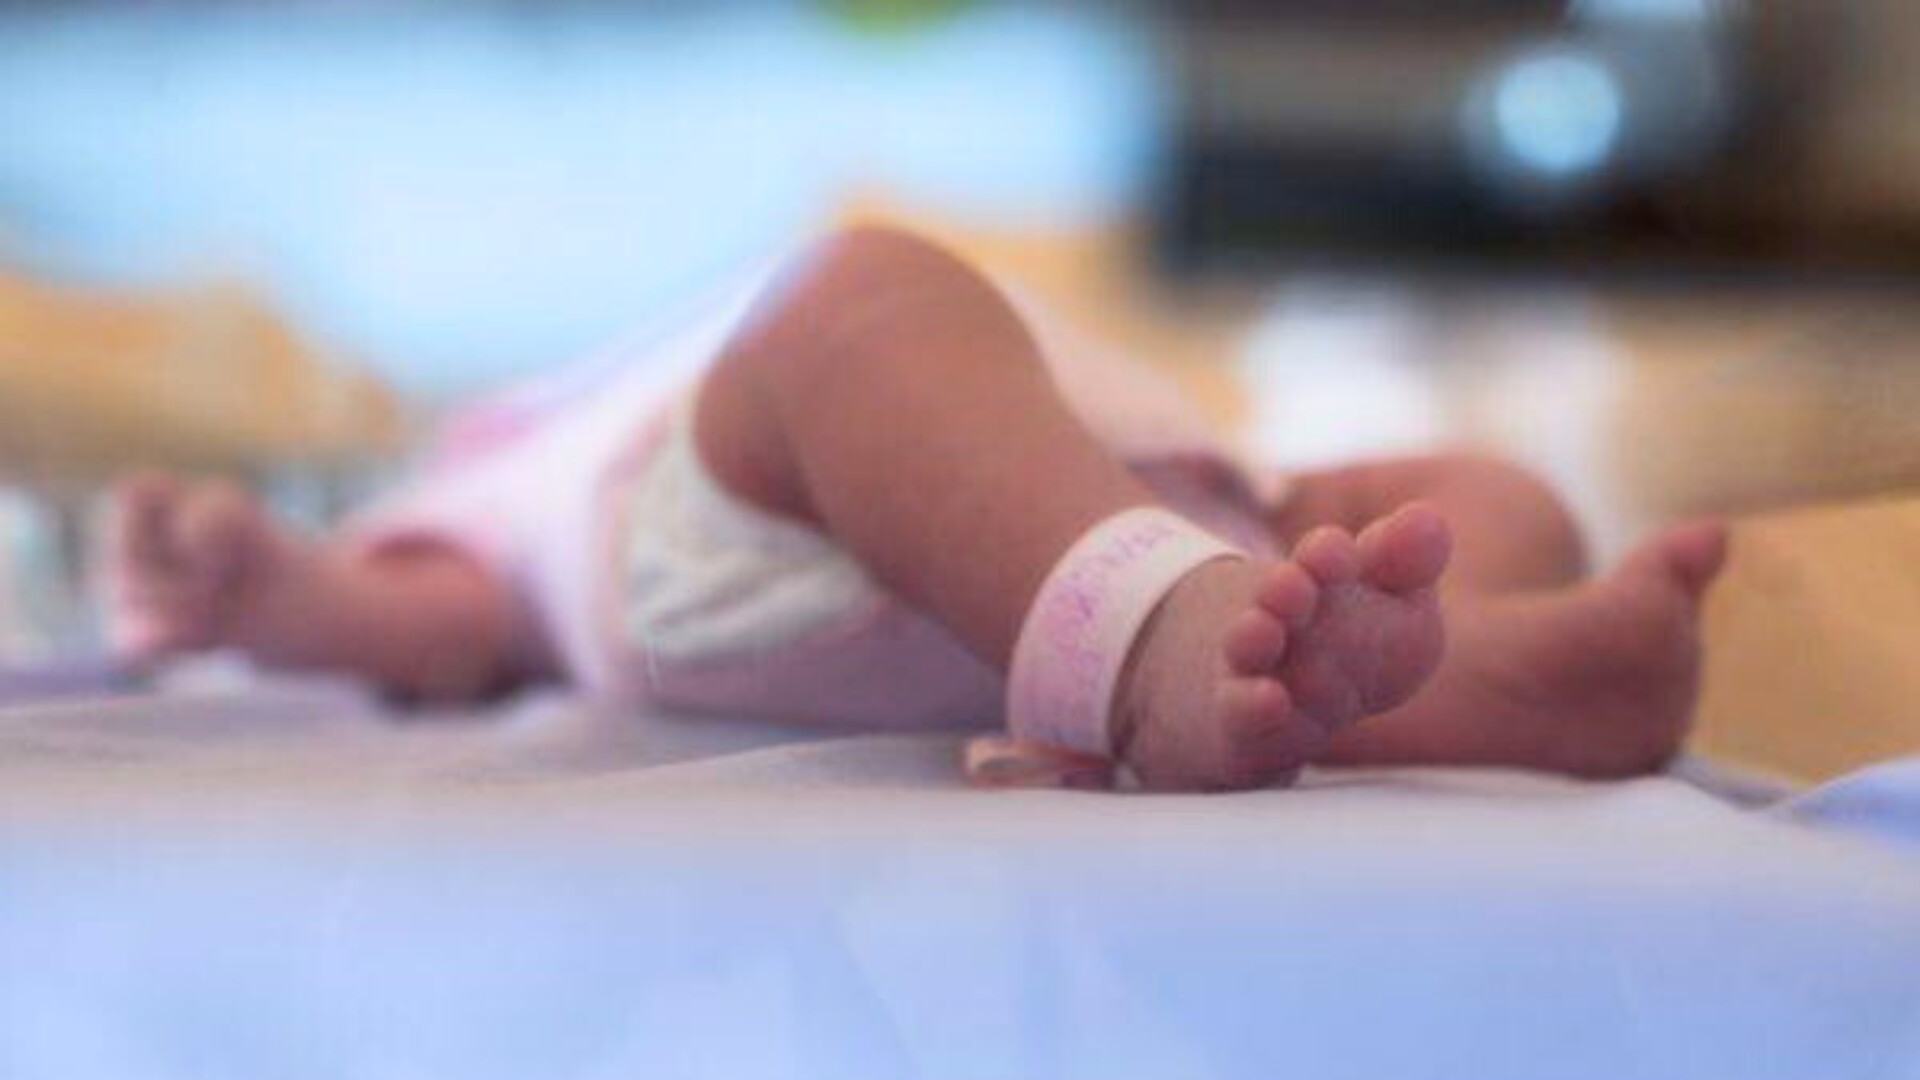 Los pies de un bebé recién nacido en el hospital Argenteuil en un suburbio de París, Francia.